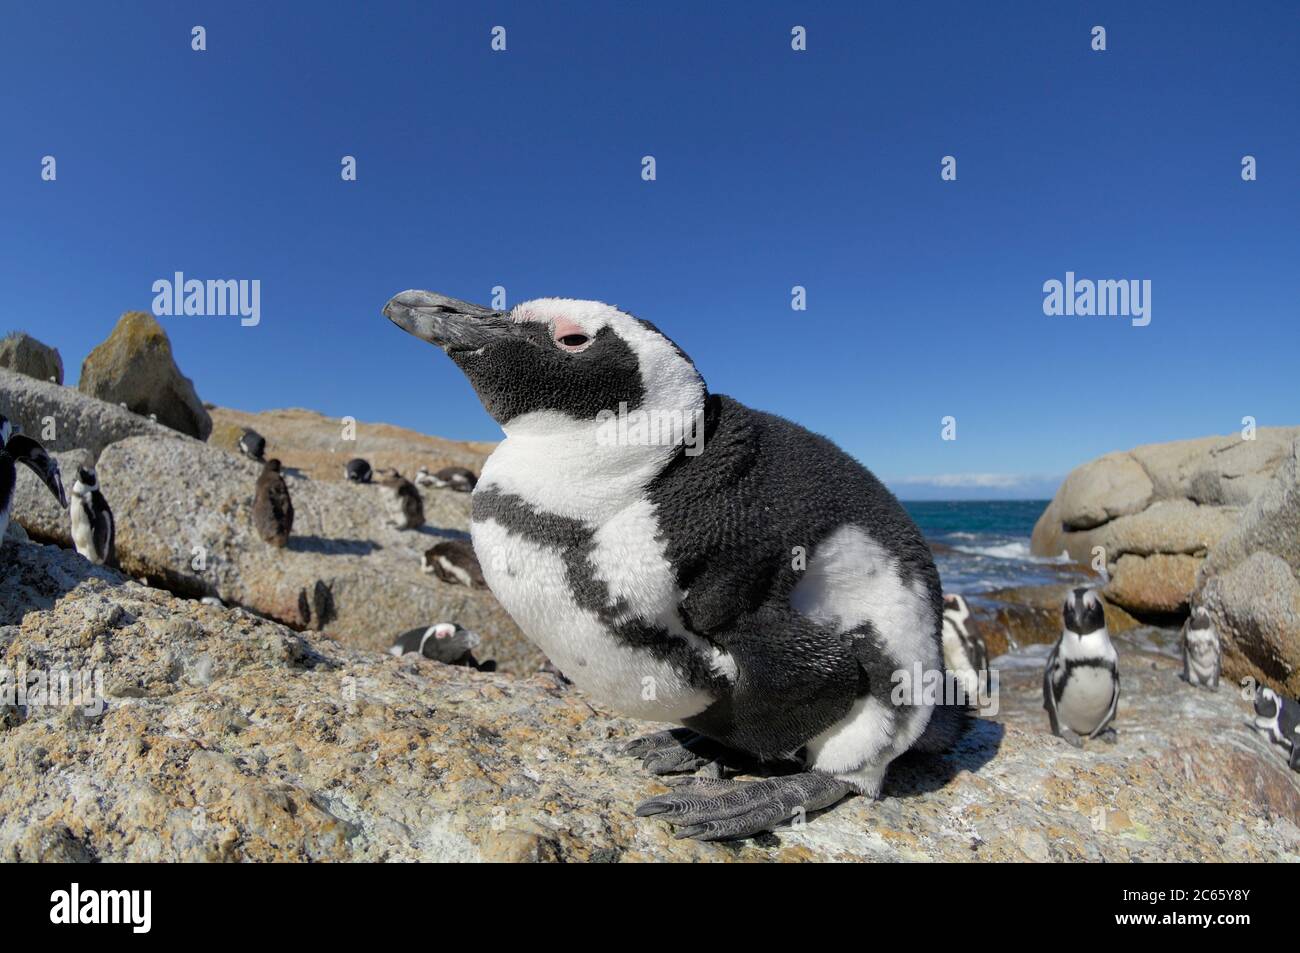 Il pinguino africano (Speniscus demersus), conosciuto anche come il pinguino dai piedi neri (e precedentemente come il pinguino di Jackass), si trova sulla costa sud-occidentale dell'Africa.. Boulders Beach è un'attrazione turistica, per la spiaggia, il nuoto e i pinguini. I pinguini permetteranno alla gente di avvicinarsi loro vicino come un metro (tre piedi). Foto Stock